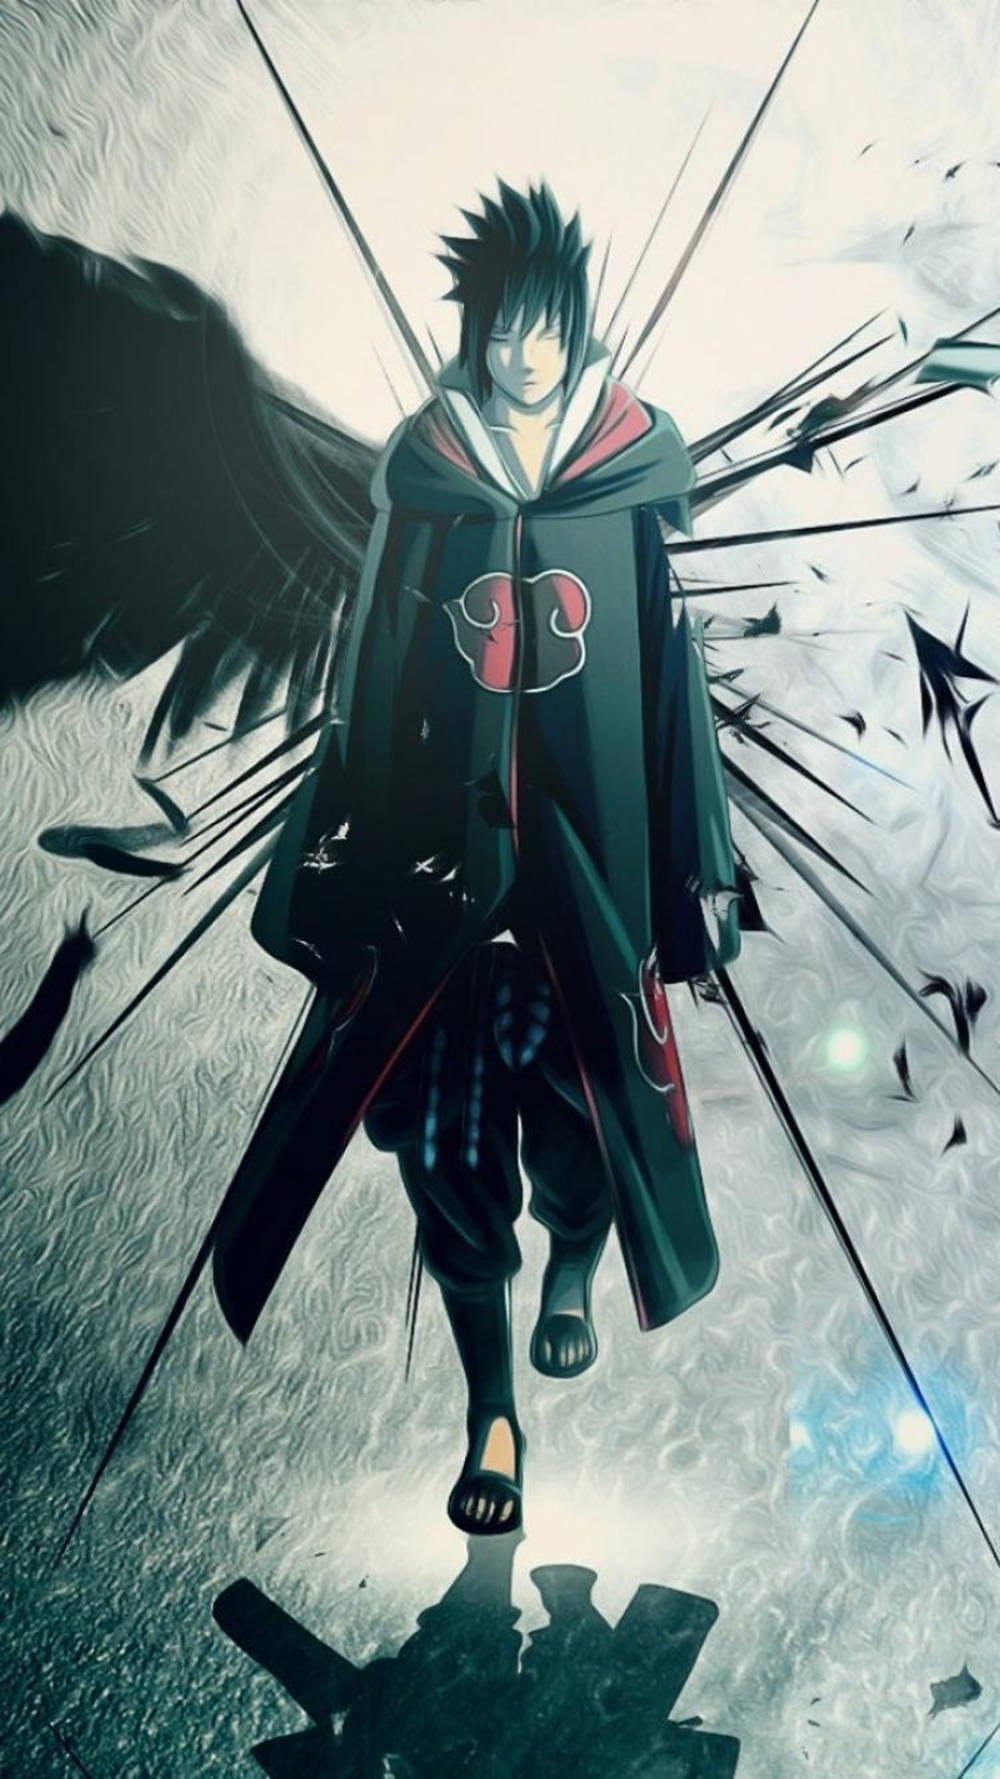 Sasuke Uchiha - The Unforgiving Ninja from Naruto Series on iPhone Wallpaper Wallpaper